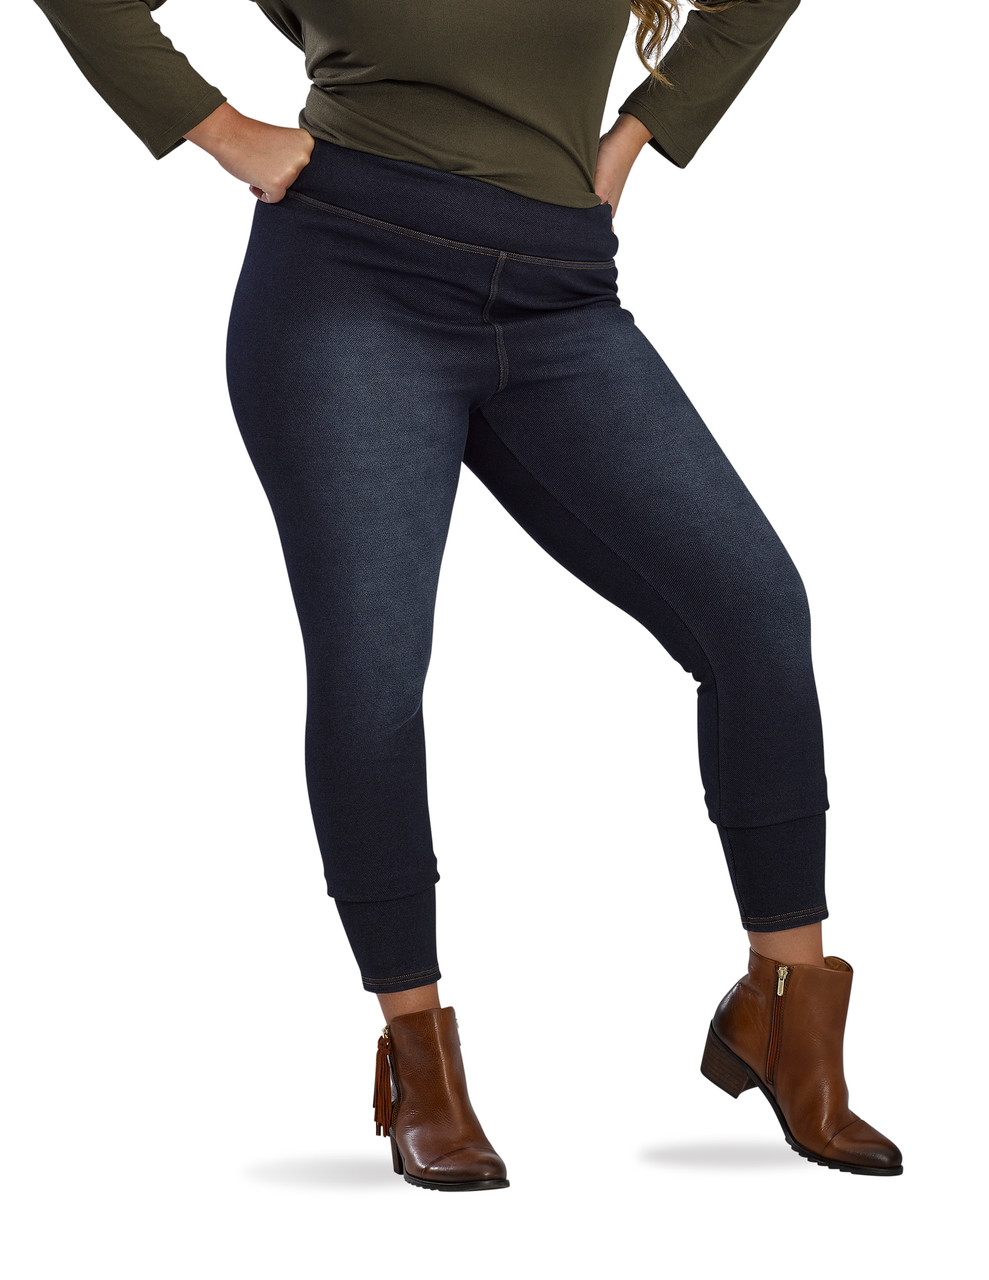 Girls plush teal top / black legging Calvin Klein Jean set size XS 5/6 NEW